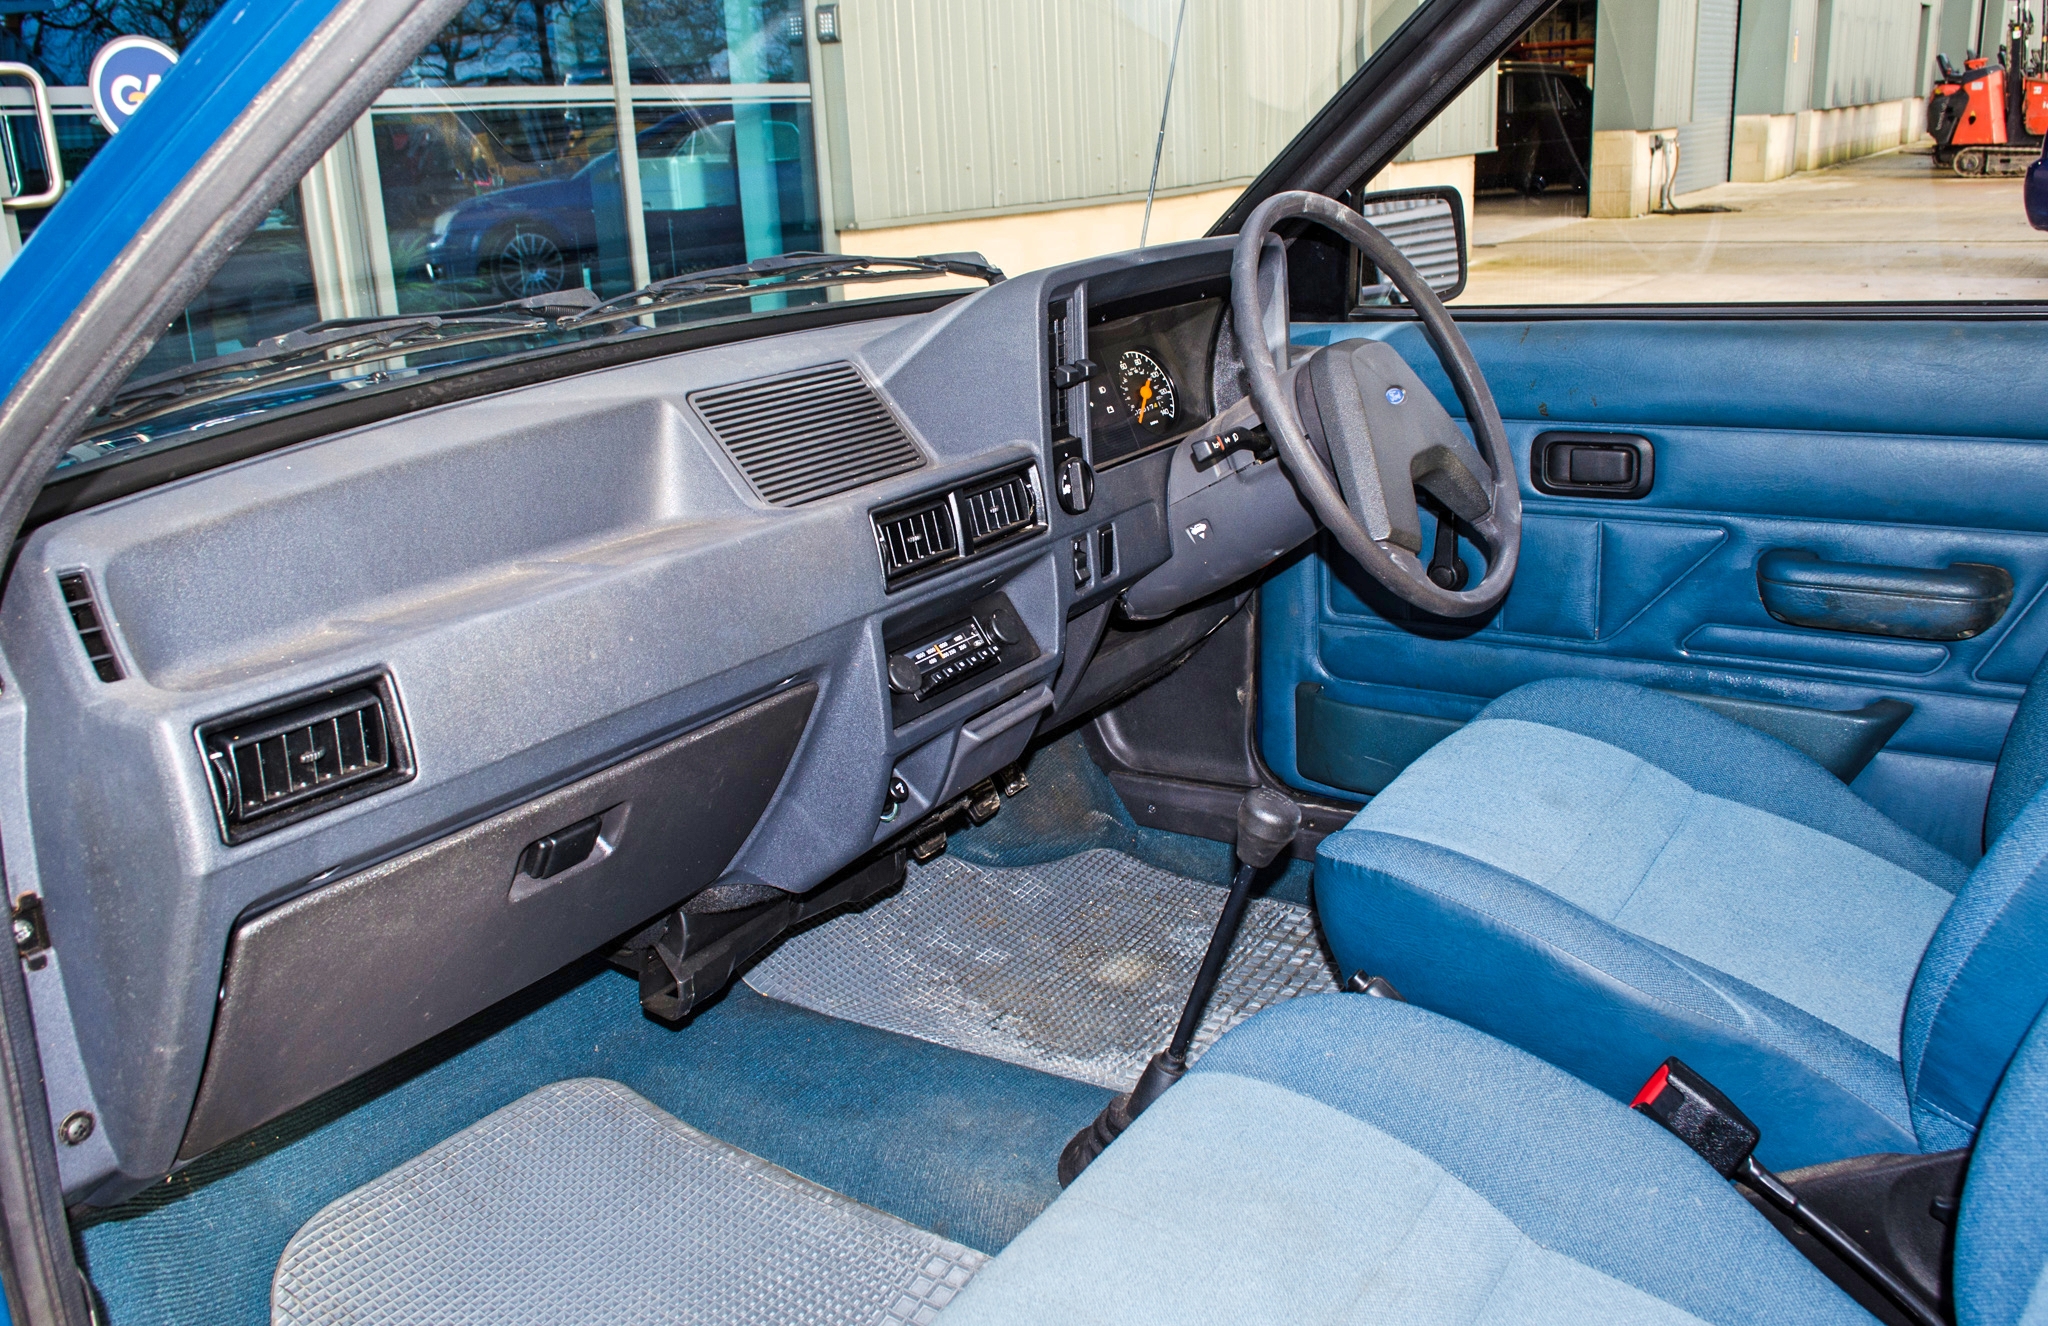 1982 Ford Escort 1.1 L 1100 cc 5 door hatchback 0nly 2017 miles - Image 29 of 50